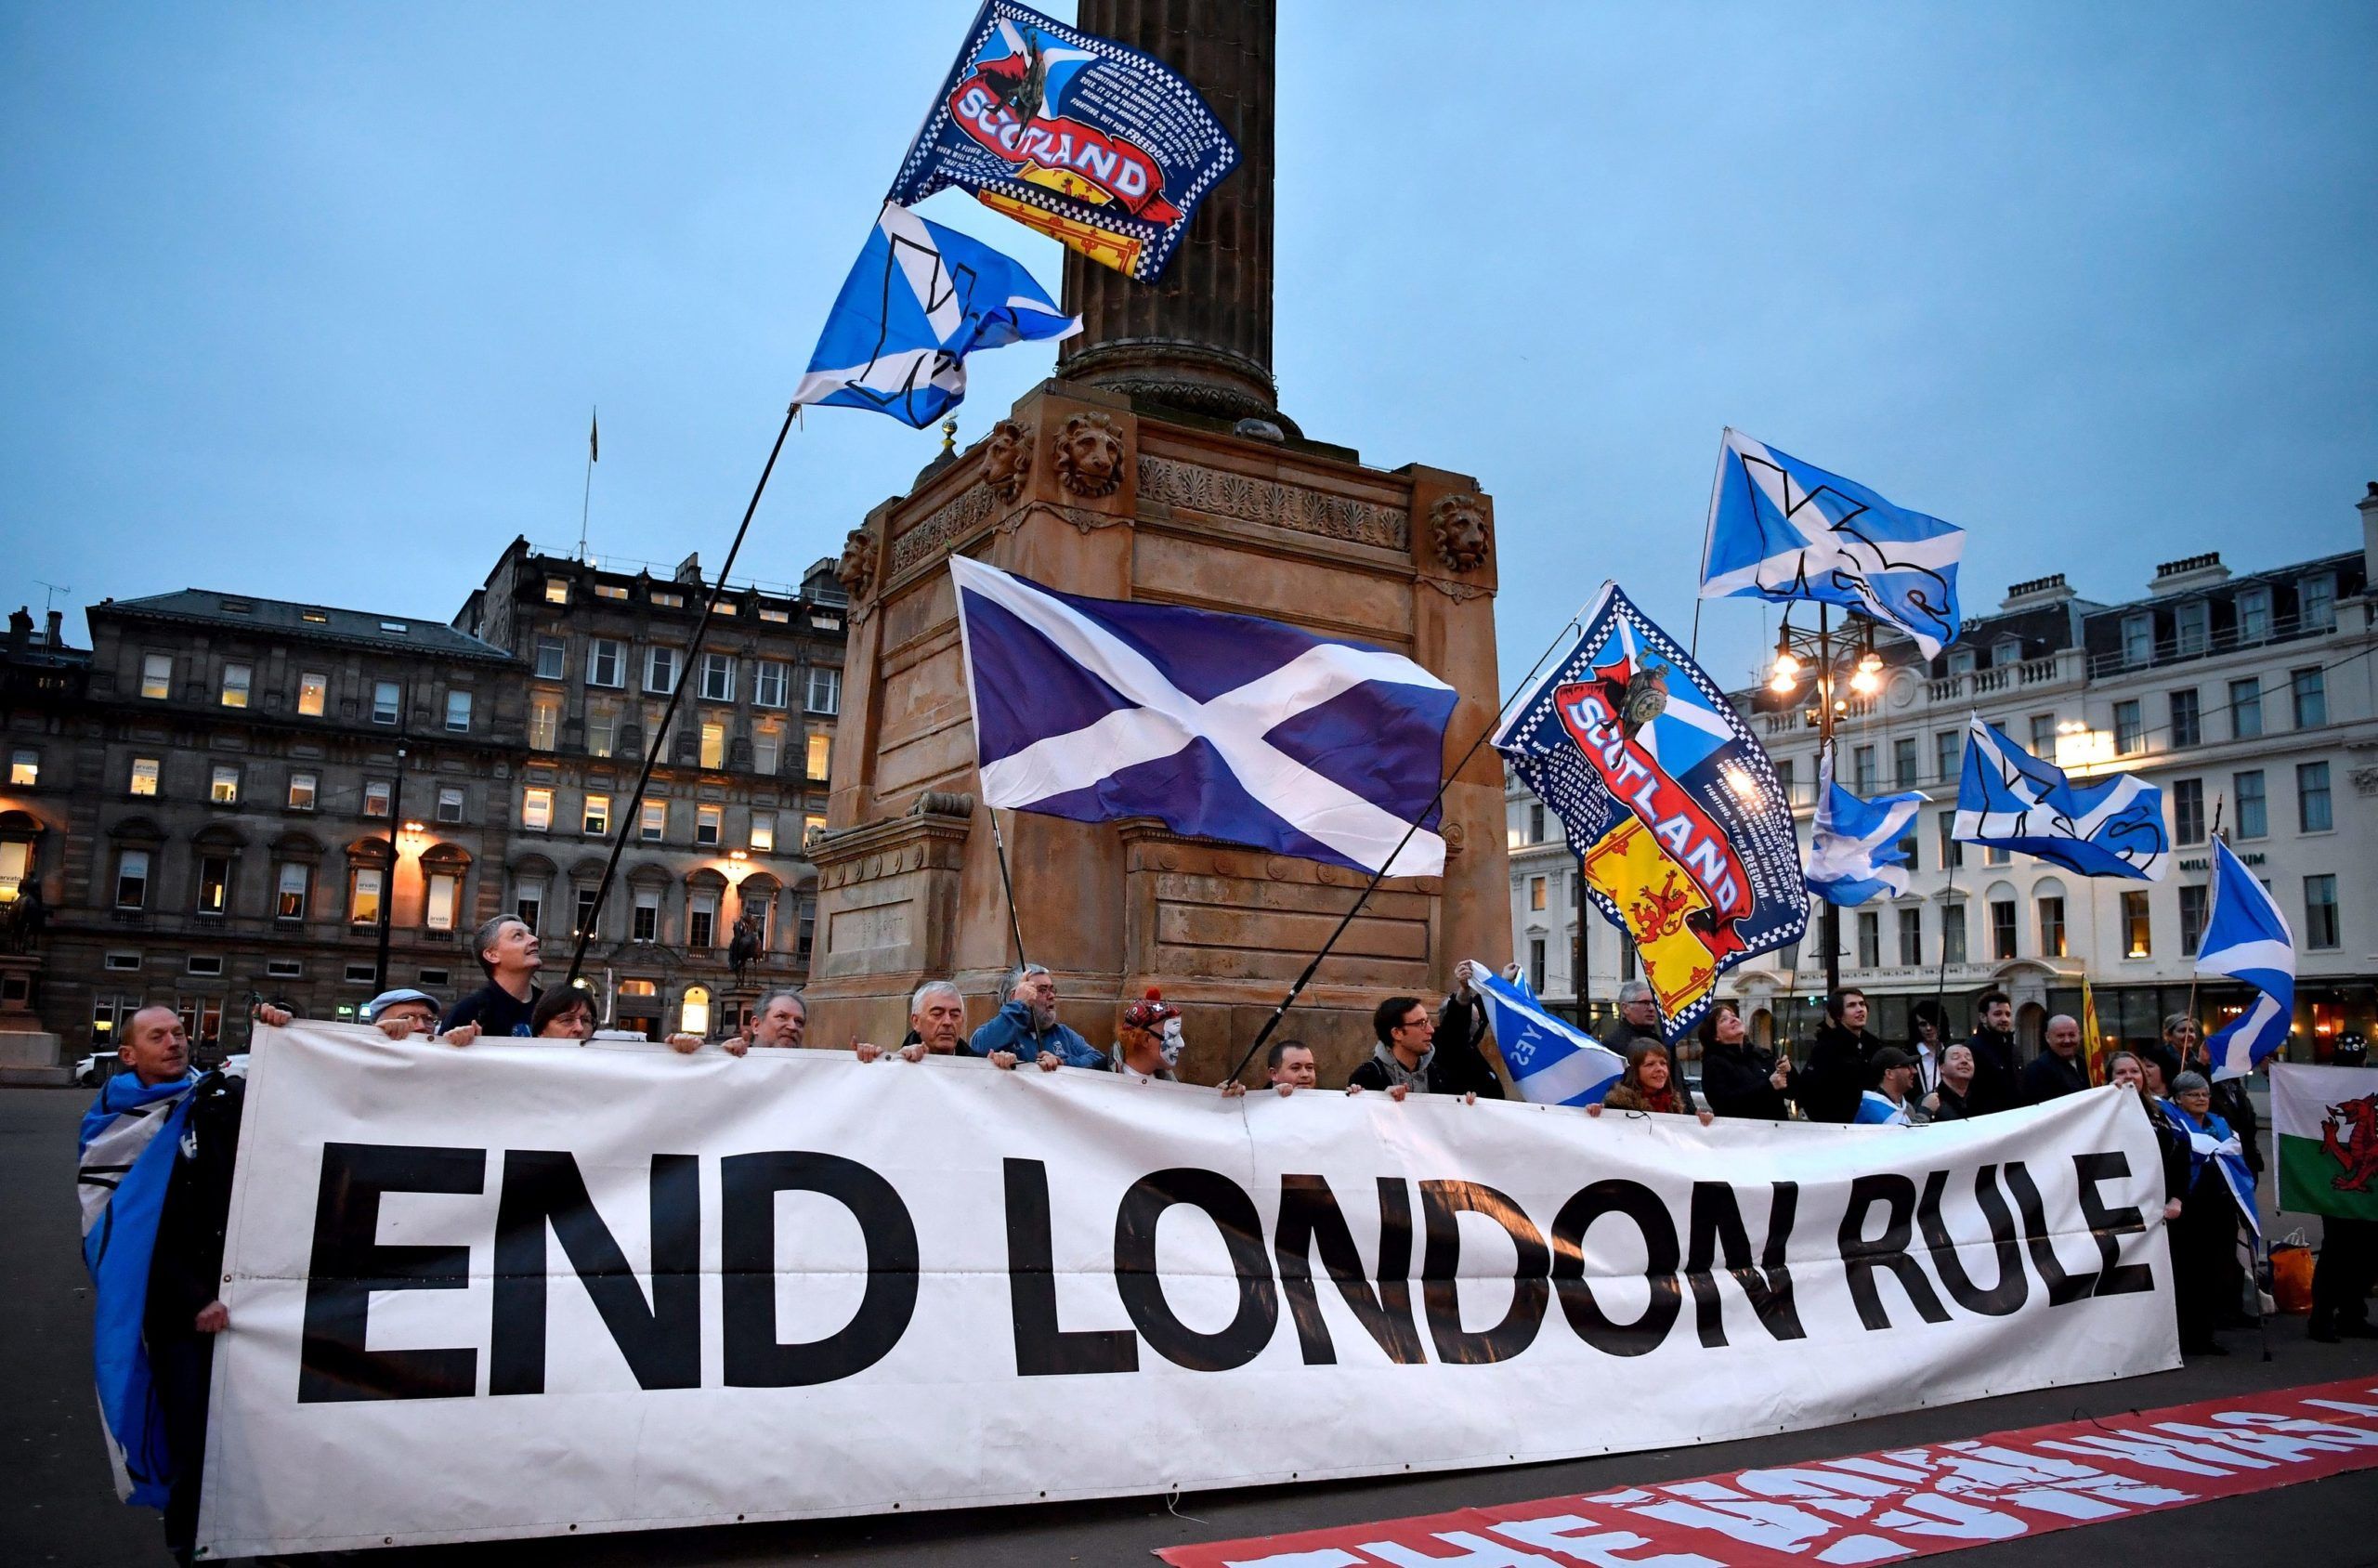 Escocia busca independencia del Reino Unido